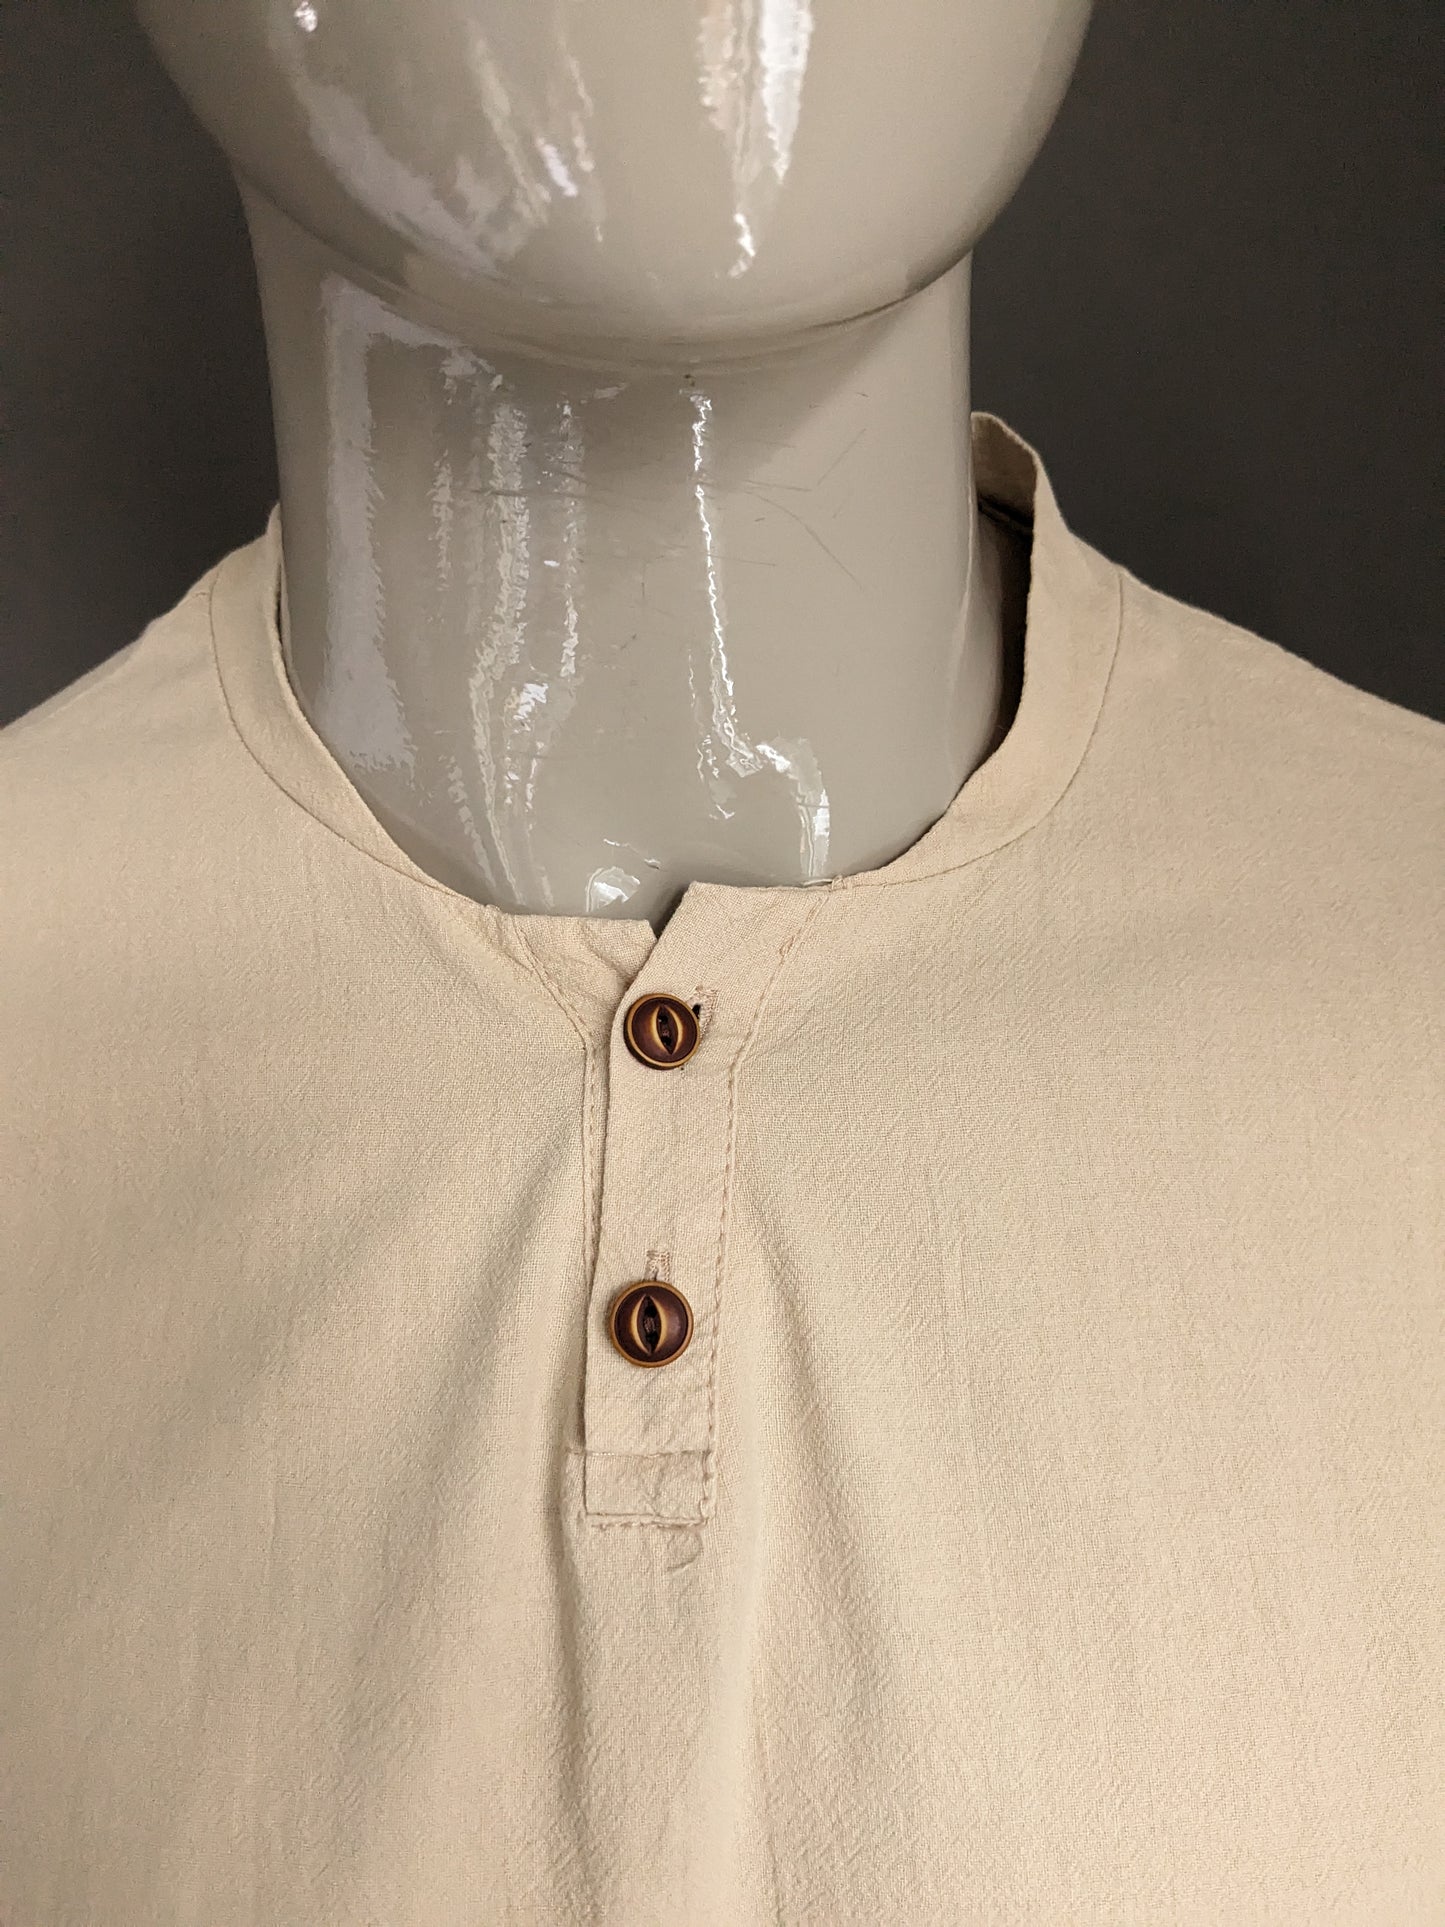 Camicia vintage / polo con colletto e bottoni MAO / rialzati. Beige. Taglia L.